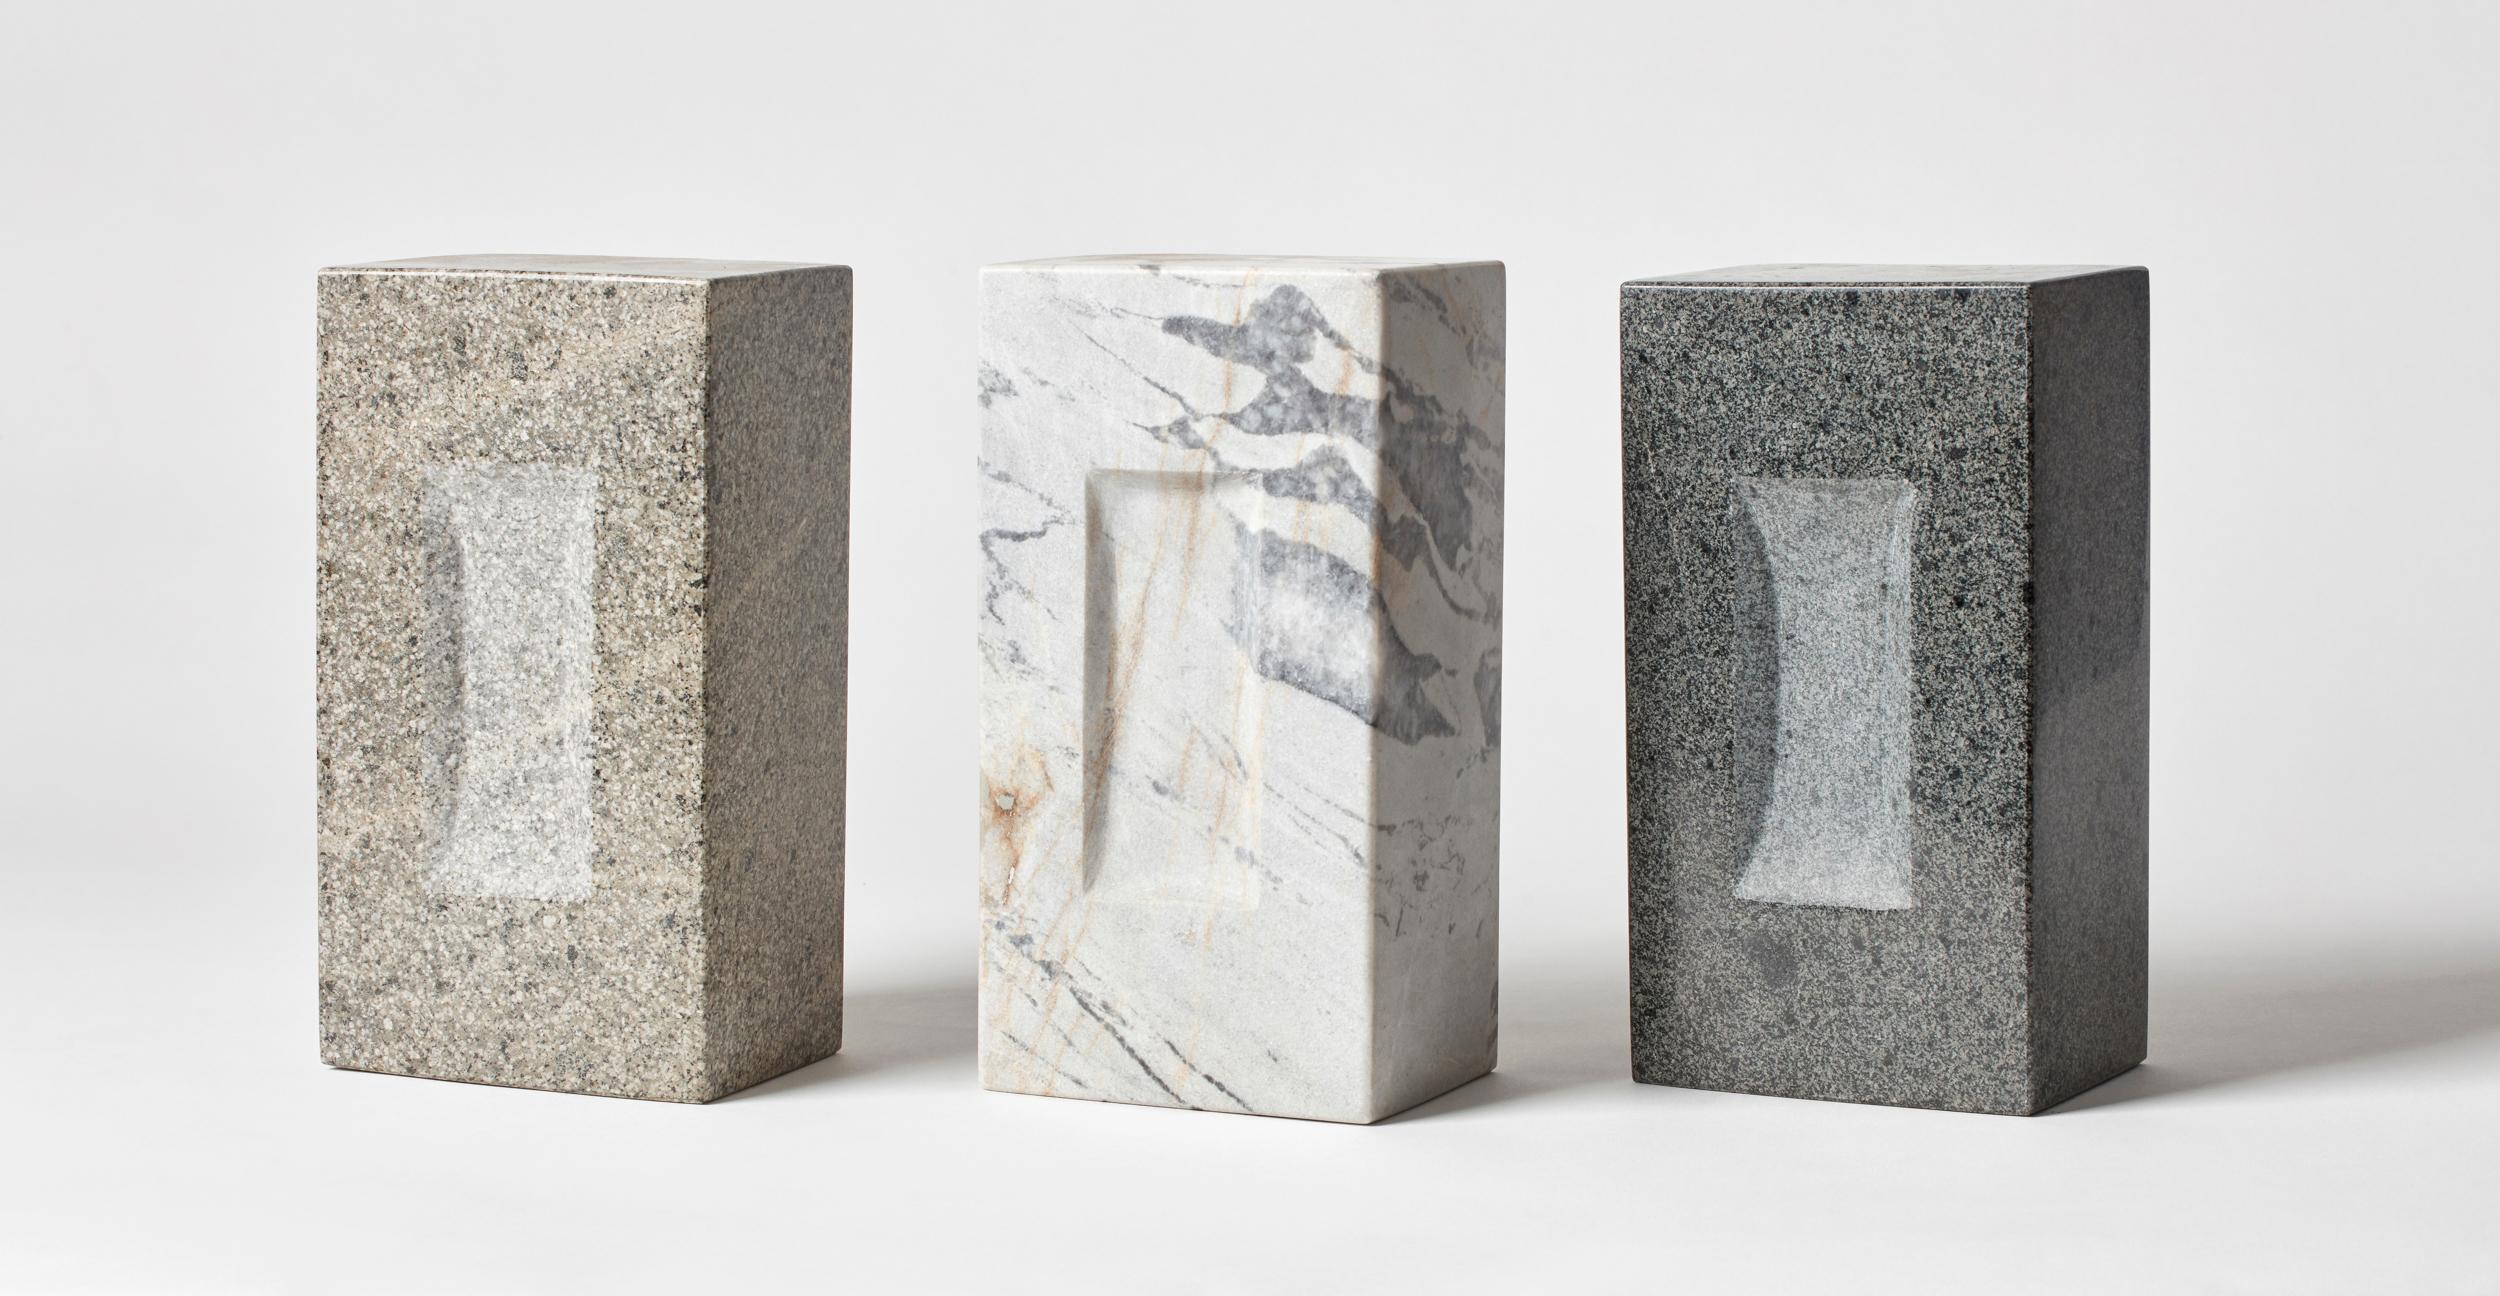 Satz von 3 Ziegelsteinen von Estudio Rafael Freyre
Abmessungen: B 12,5 T 9 x H 23 cm 
MATERIALIEN: Anden-Steine
Auch verfügbar: Andere Oberflächen verfügbar.

Der Ziegelstein ist ein allgemeines konstruktives Element, das Teil des städtischen